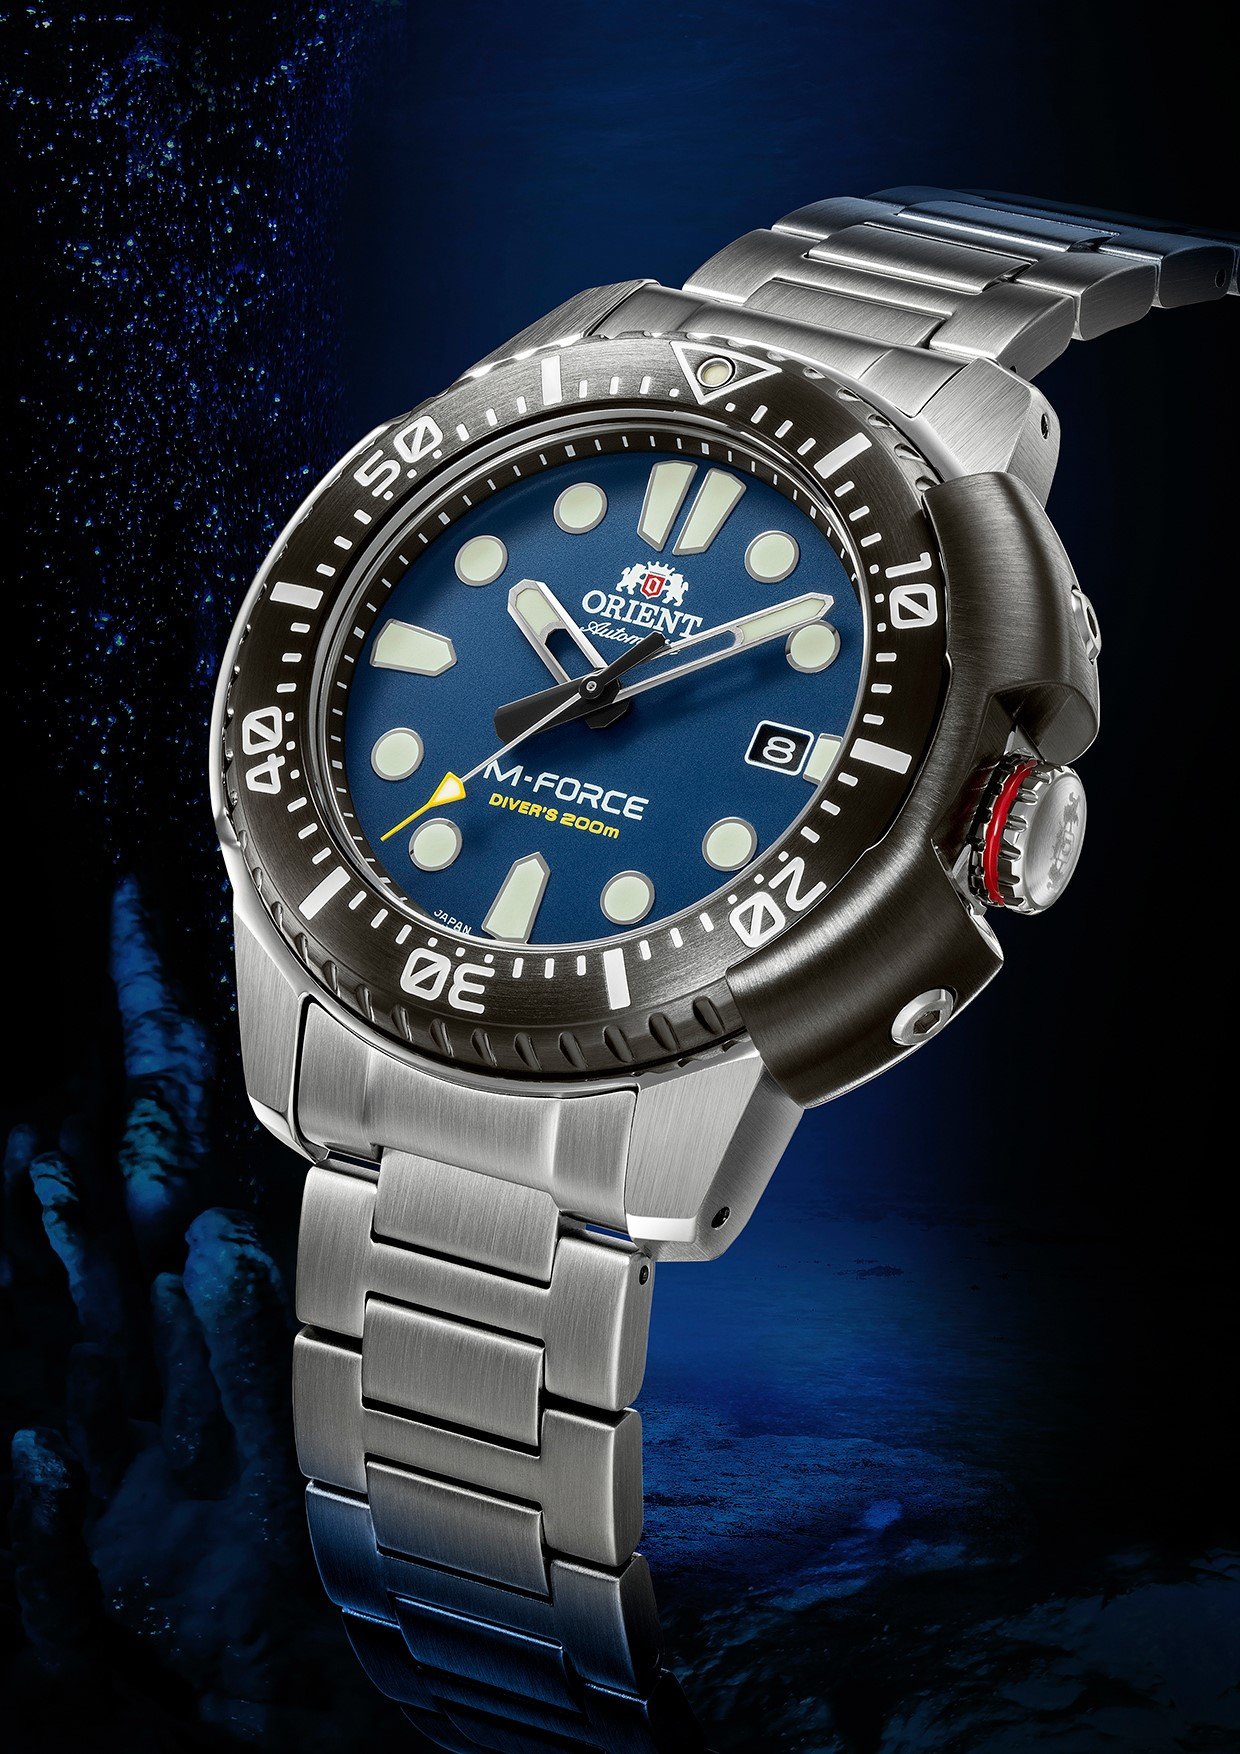 Часы Orient M-Force Dive Watch — ретро-современный ISO-дайвер менее чем за 500 долларов